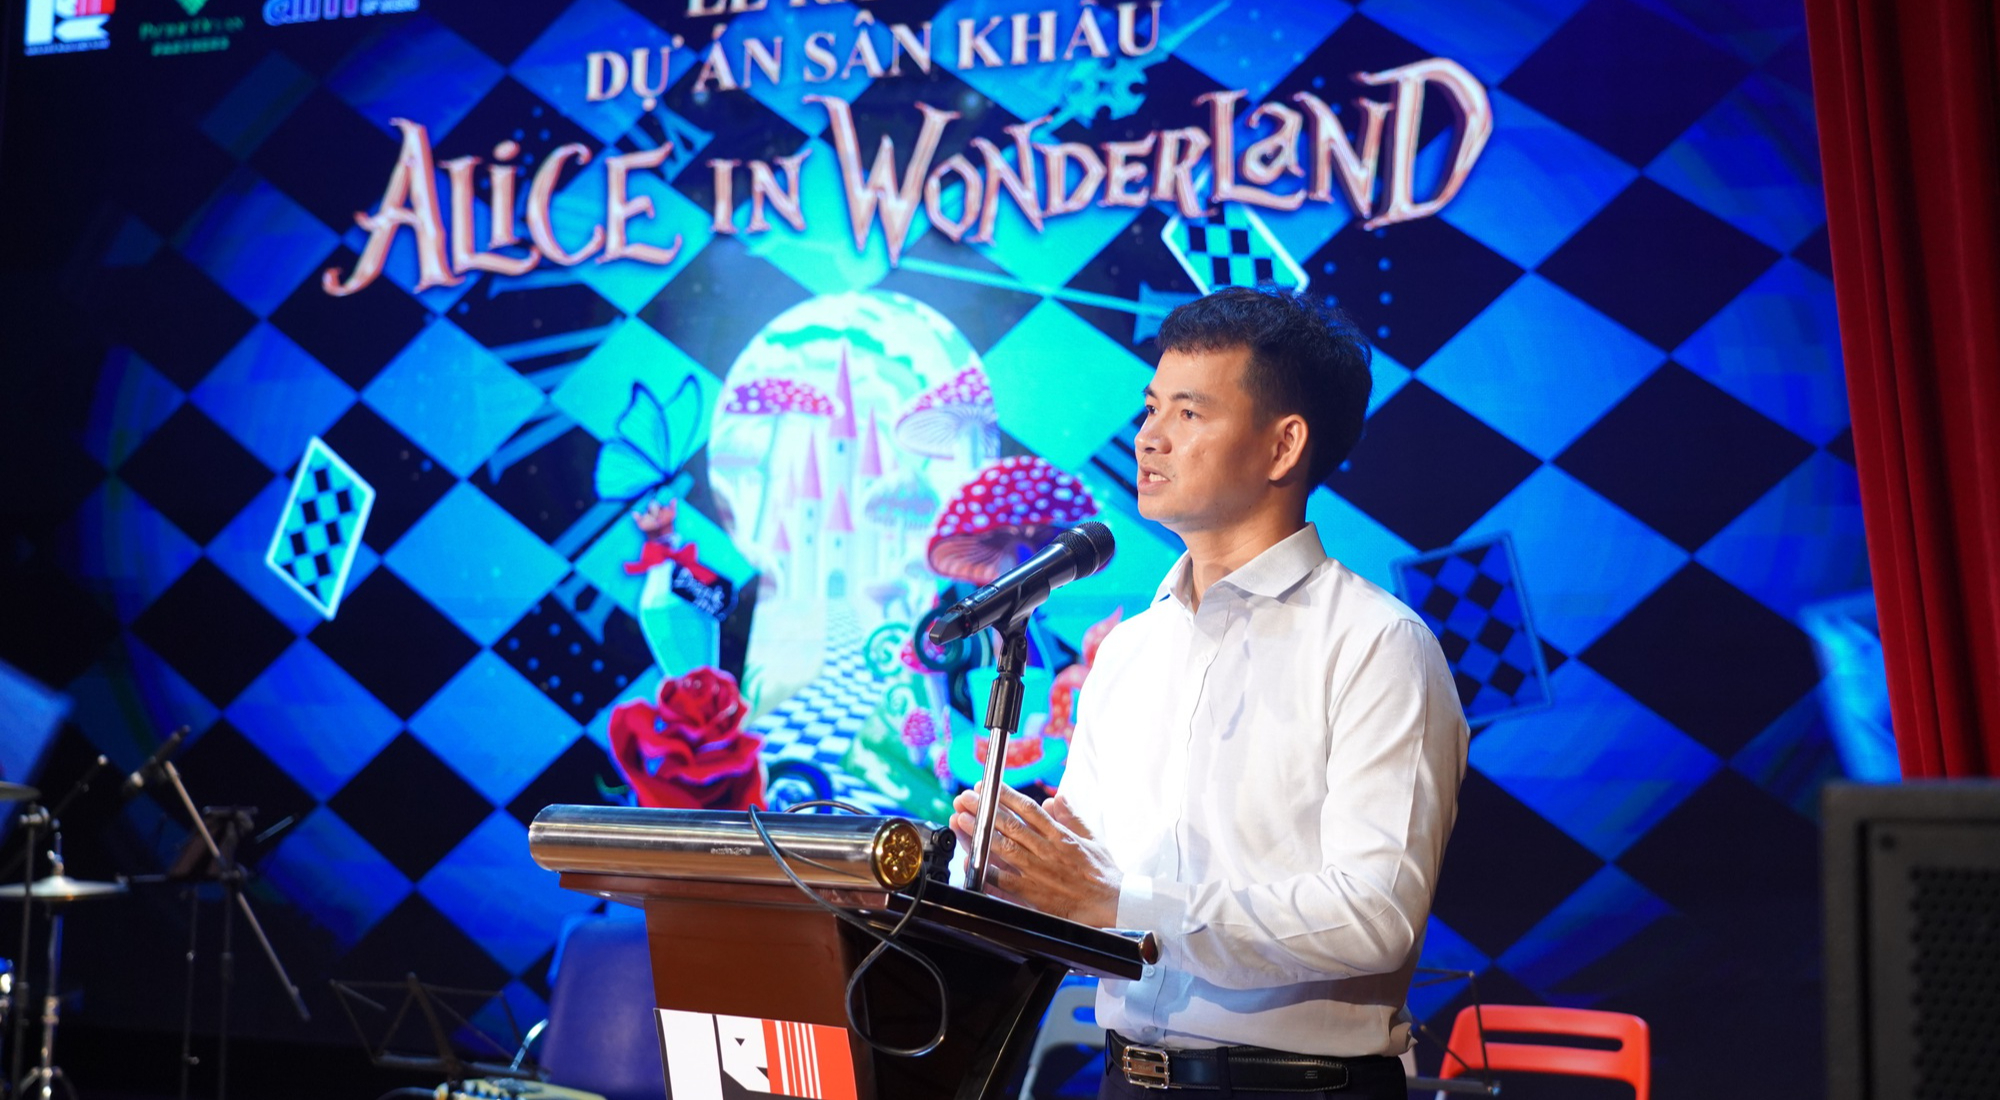 Nữ đạo diễn 21 tuổi dàn dựng vở nhạc kịch đẳng cấp quốc tế “Alice in Wonderland”  - Ảnh 1.